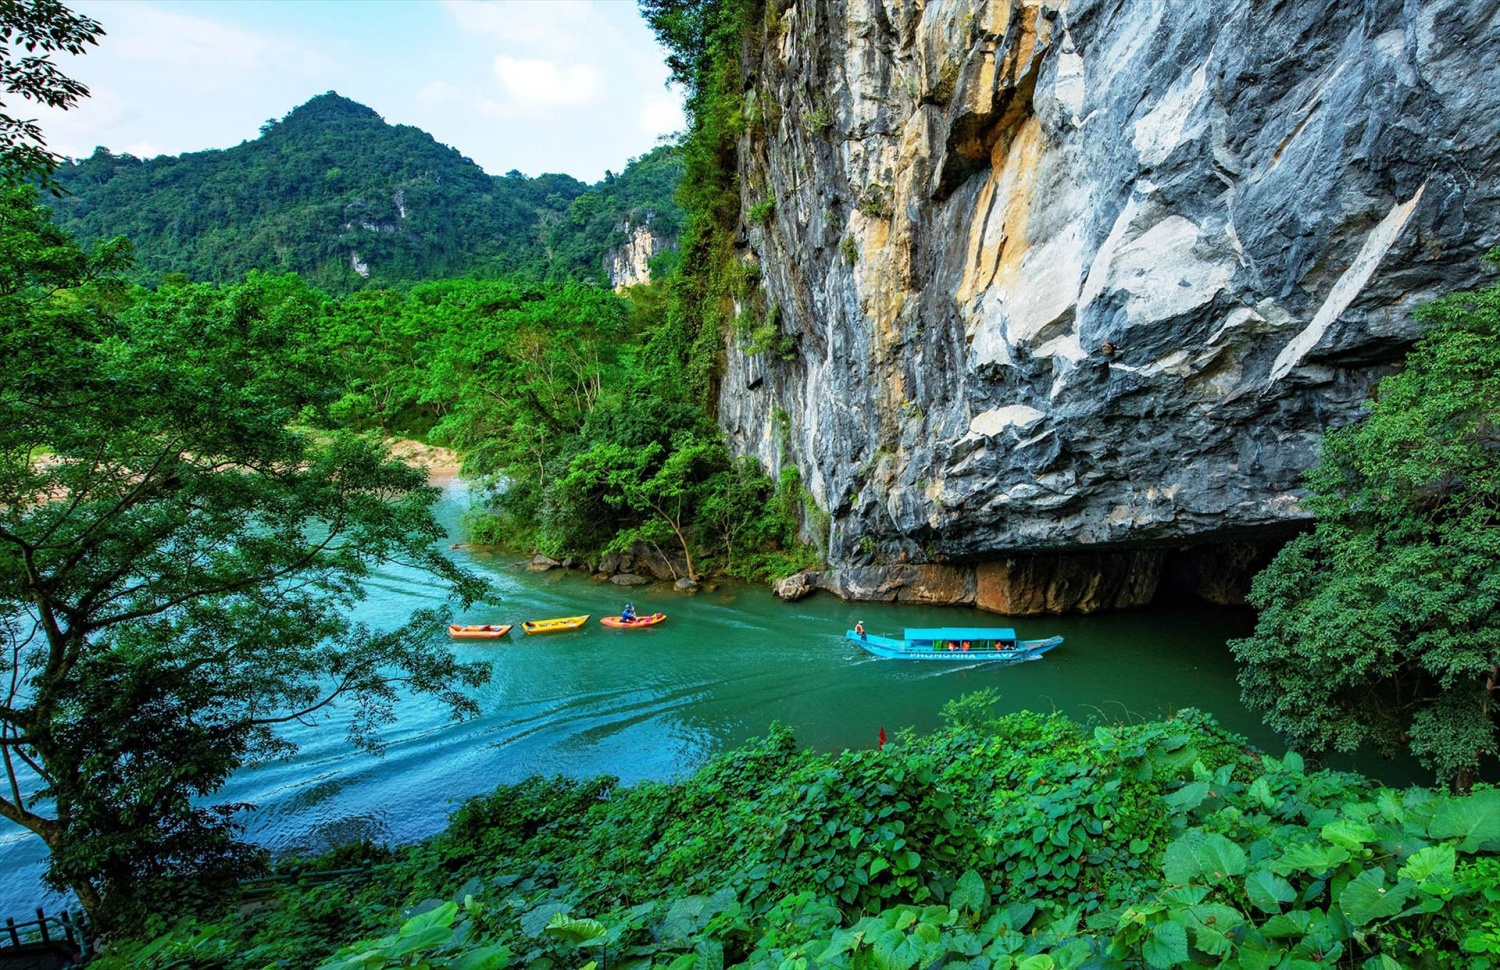 Vườn quốc gia Phong Nha - Kẻ Bàng hợp tác với Vương quốc Anh về du lịch thám hiểm hang động